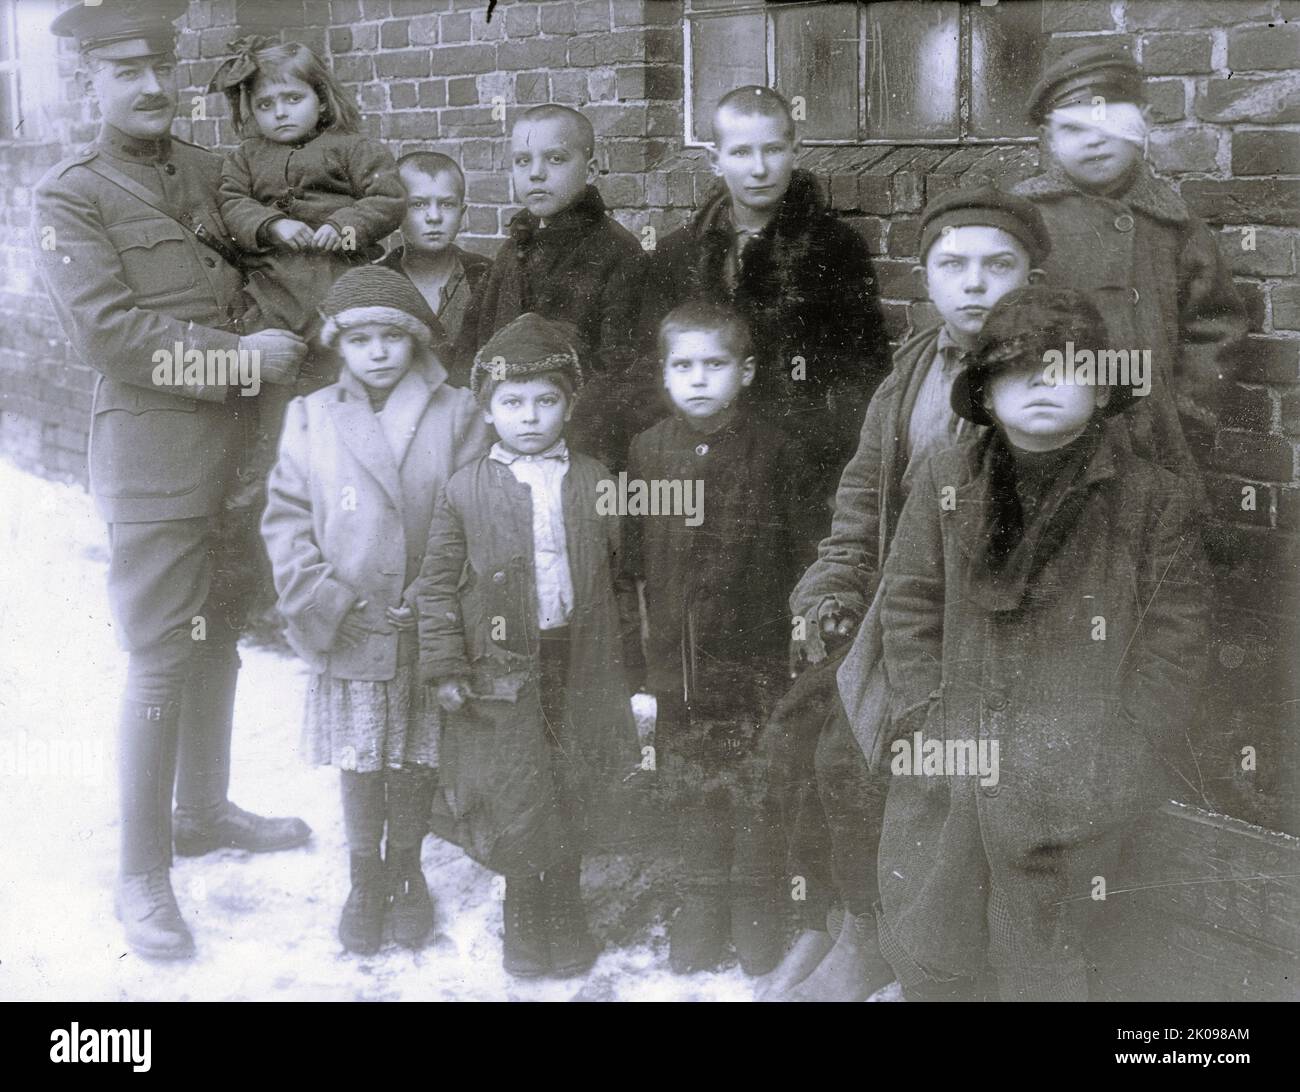 Gli orfani polacchi sono stati scelti a caso da un campo profughi che ospita 20.000 persone vicino a Varsavia, 1920. Foto Stock